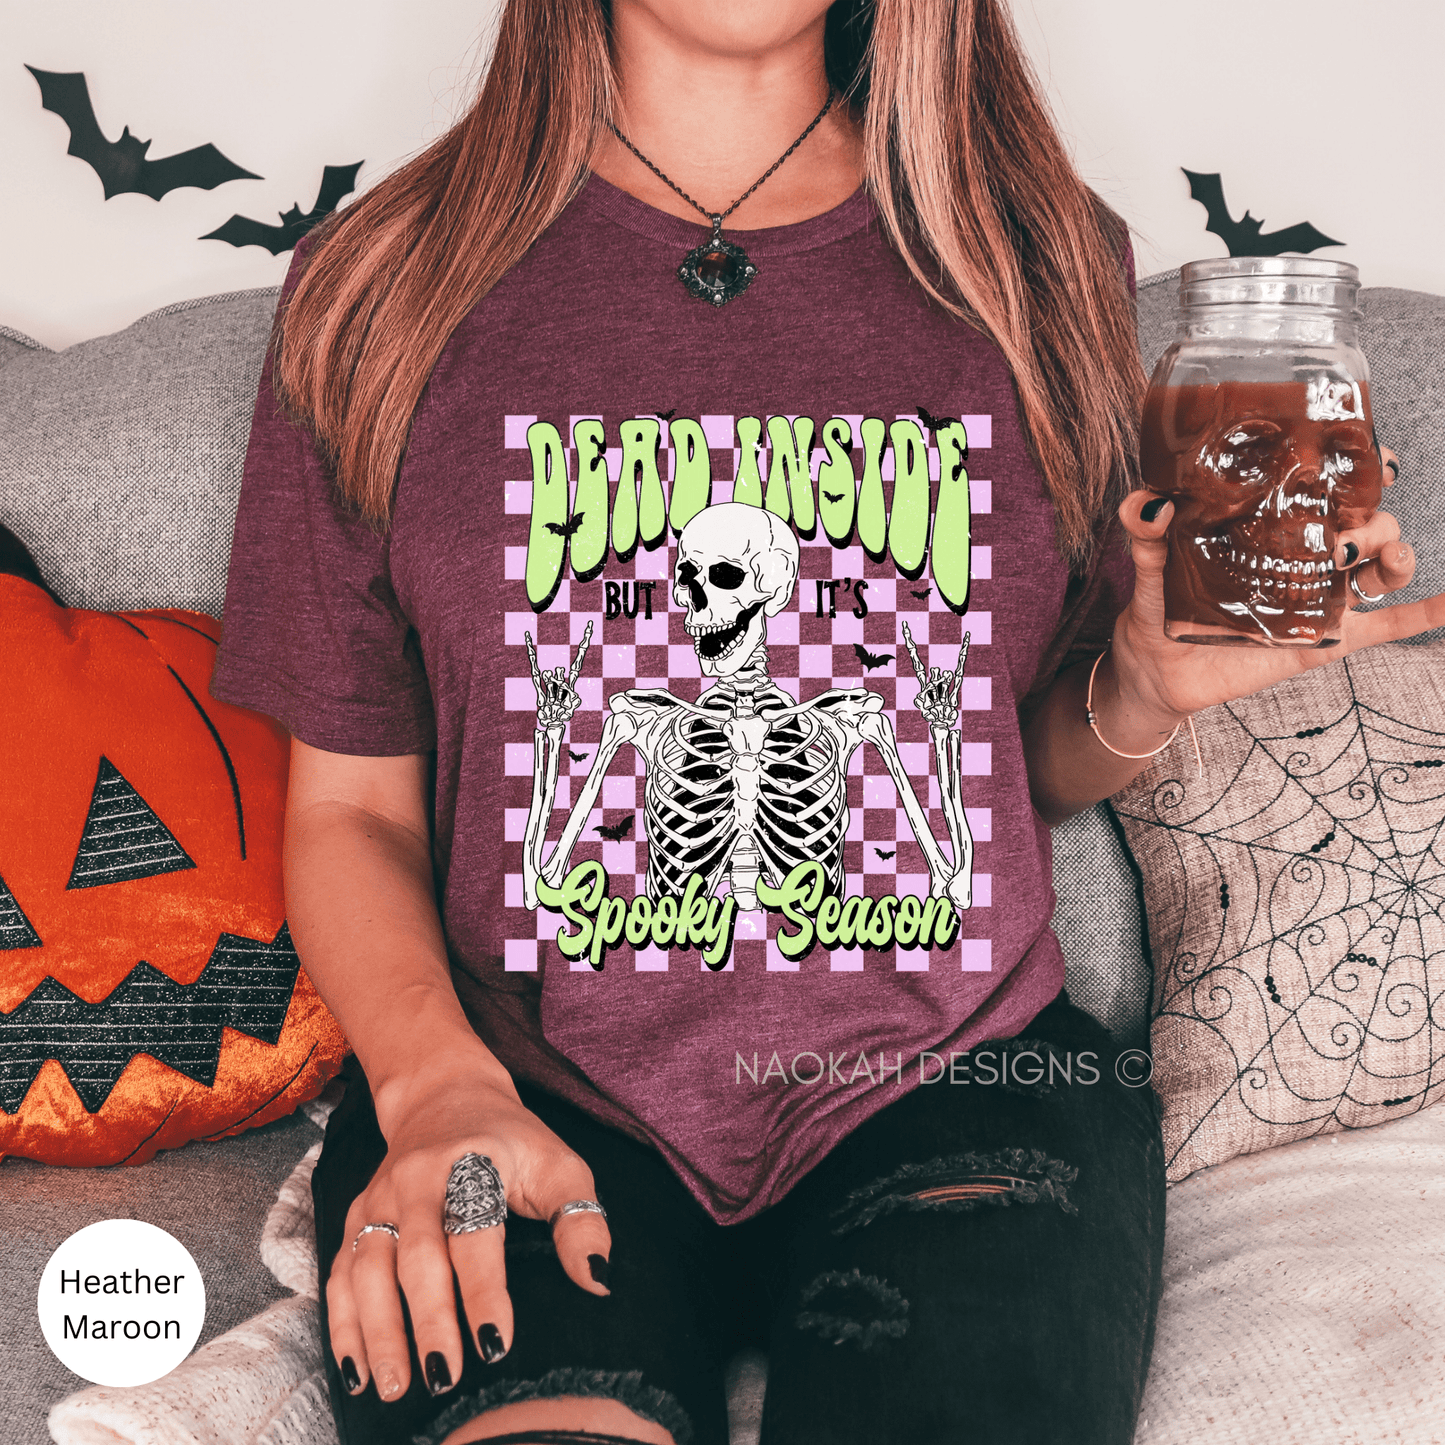 Dead Inside But It's Spooky Season T-Shirt, Funny Halloween Shirt, Rock 'N' Roll Tees, Rocker Skeleton Tshirt, Halloween Party Outfit